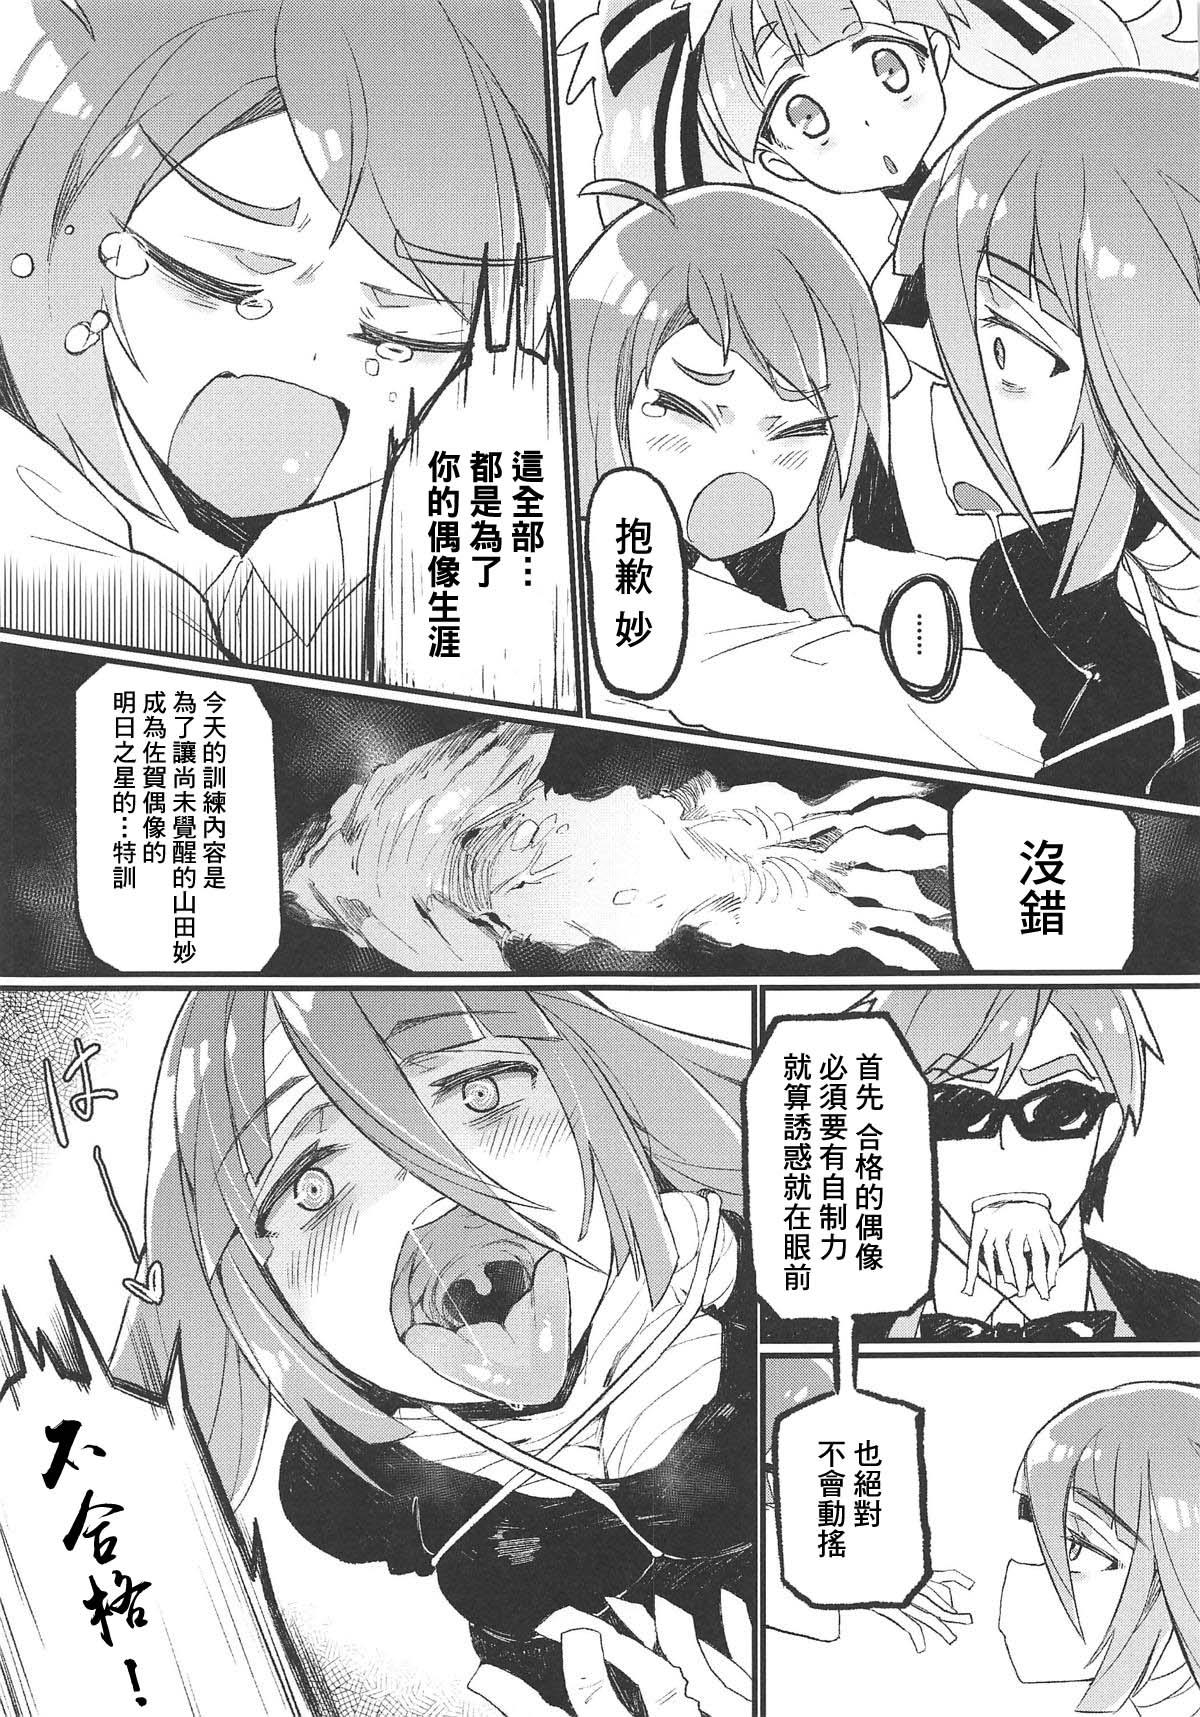 Rubbing Densetsu no Hon - Zombie land saga Creamy - Page 6